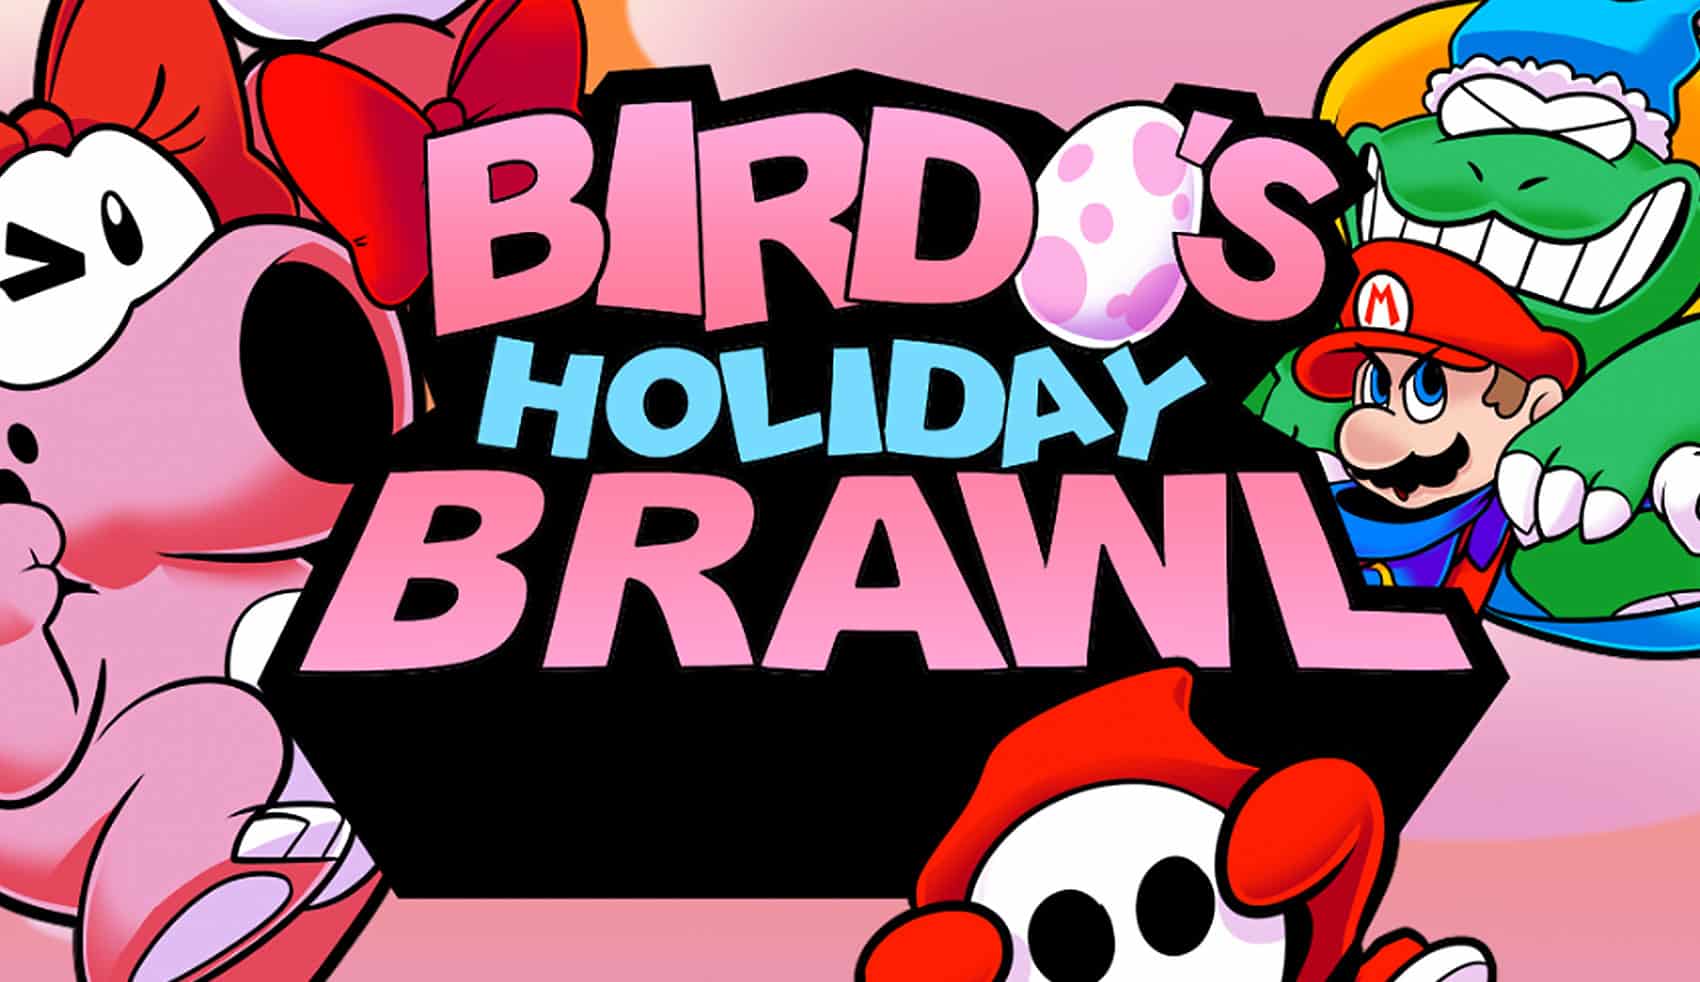 thumb-birdos-holiday-brawl